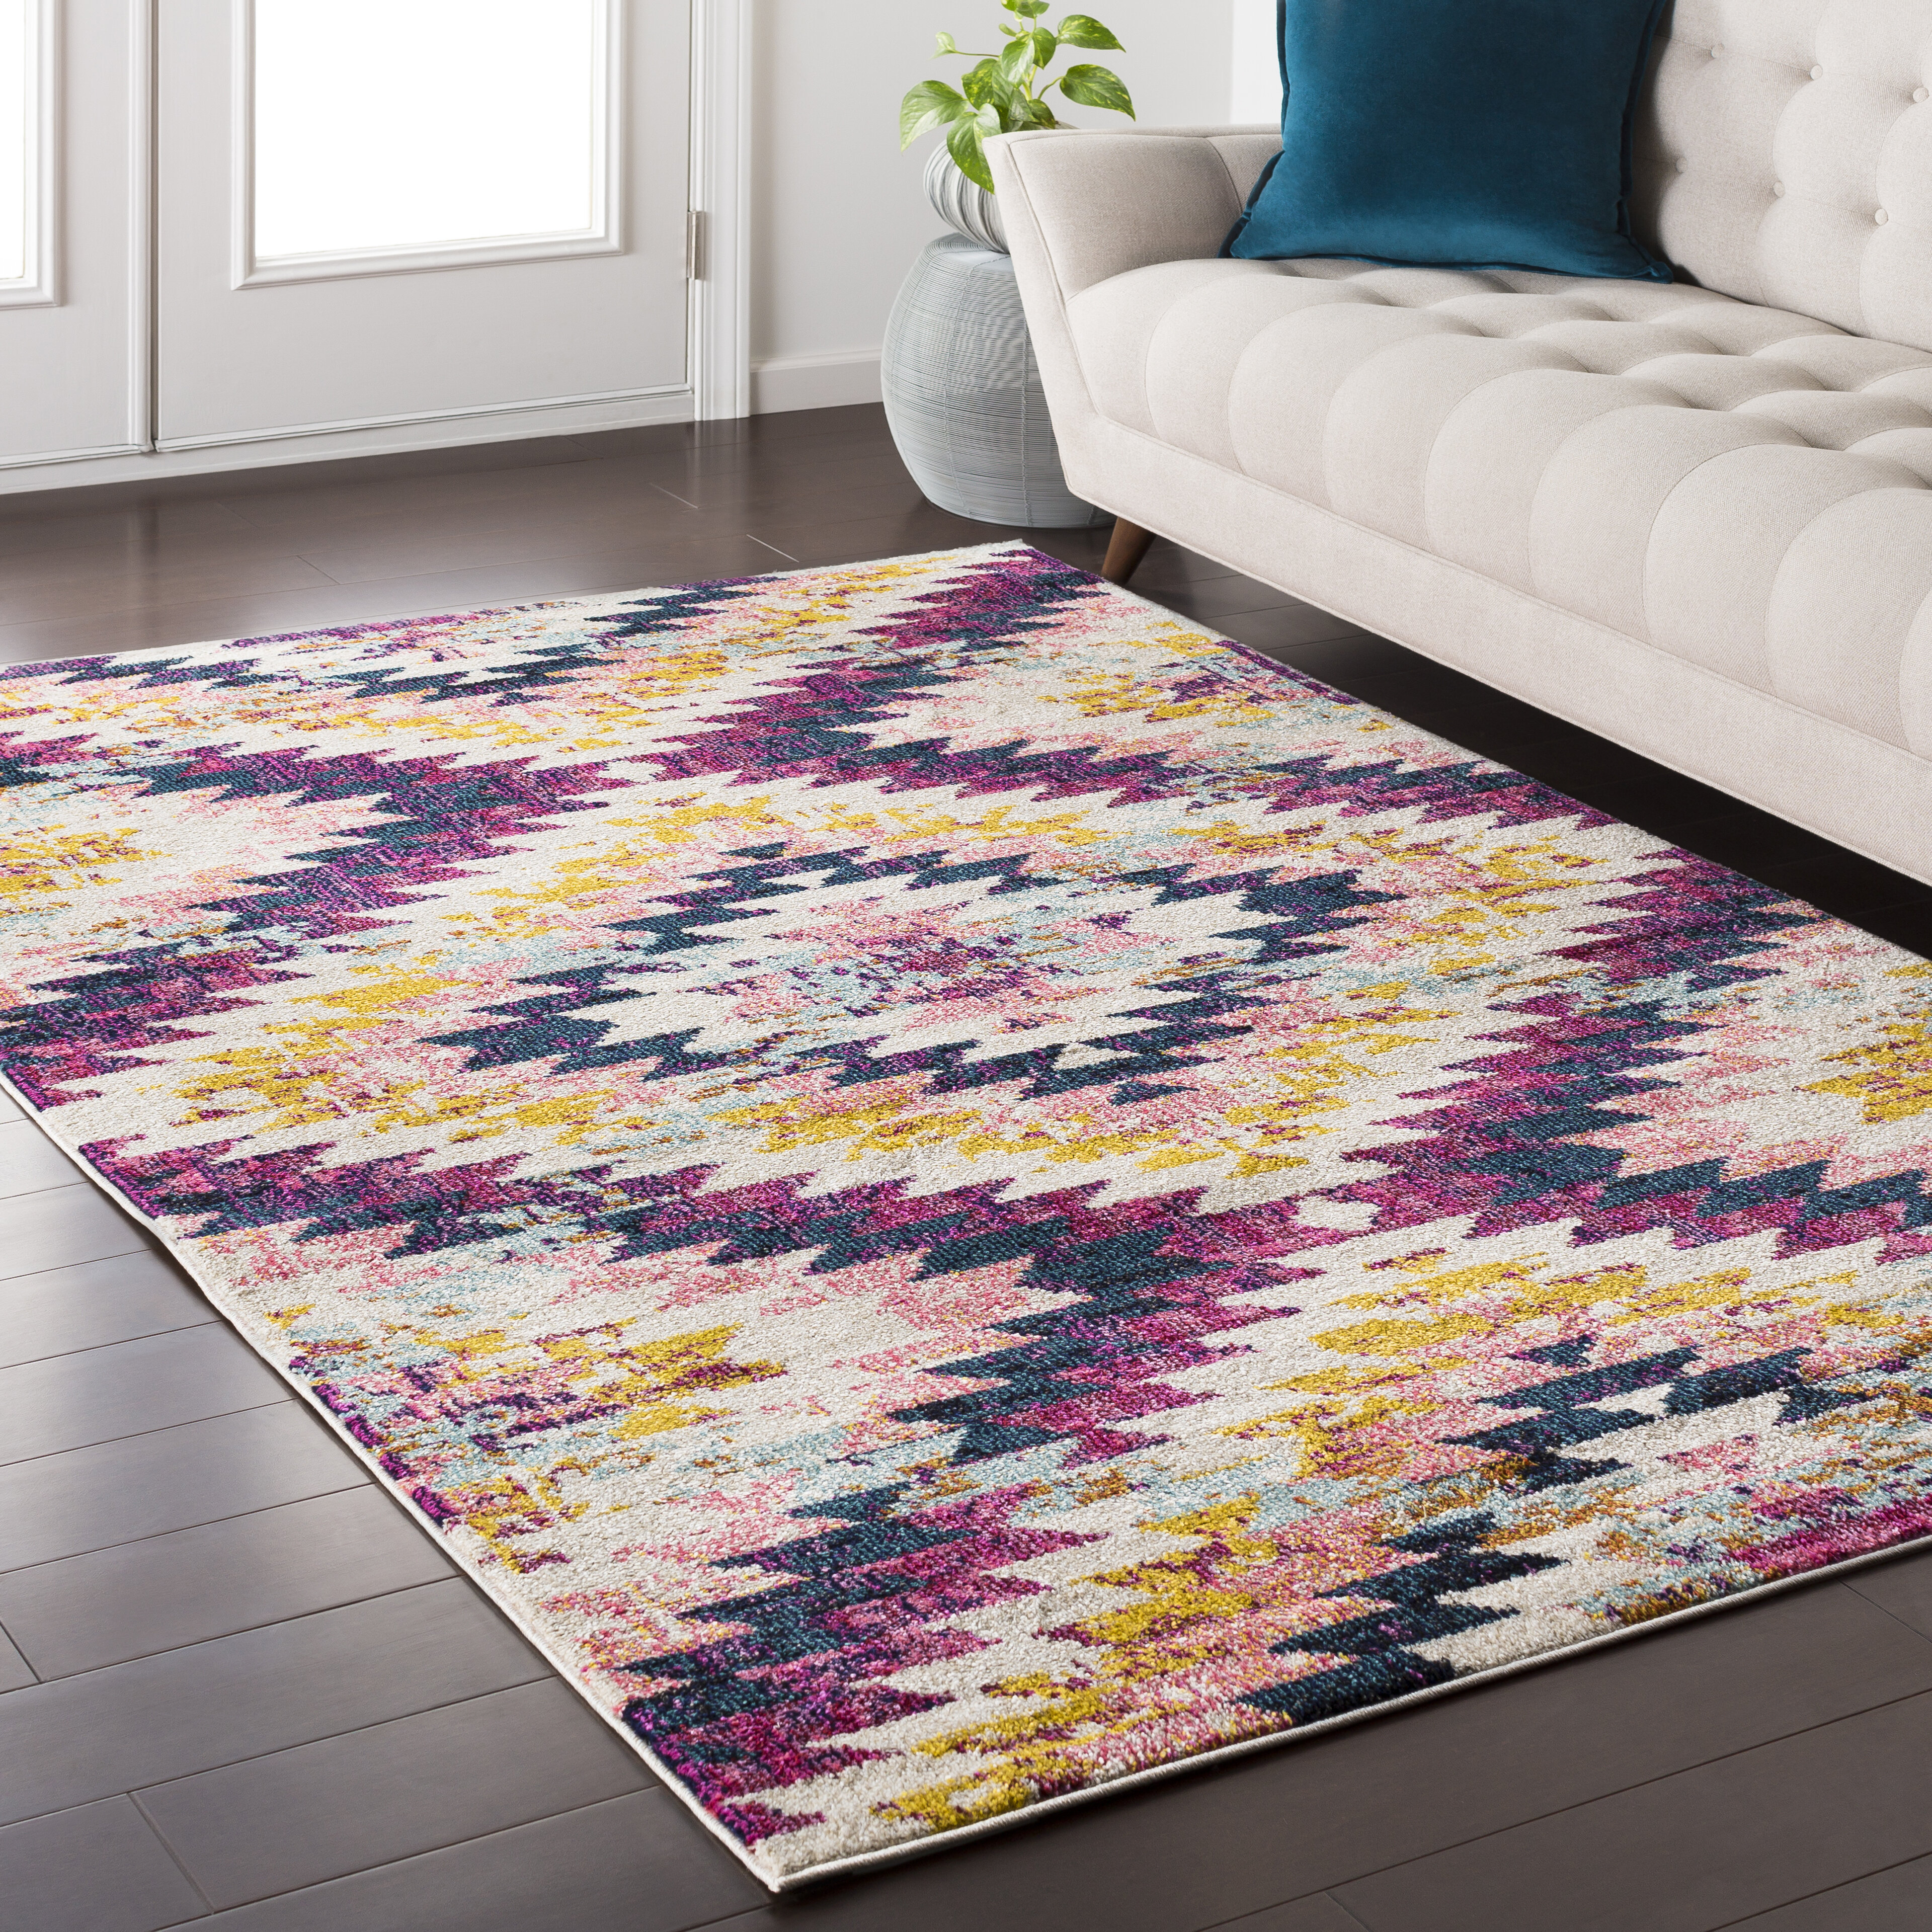 purple area rugs 3x5